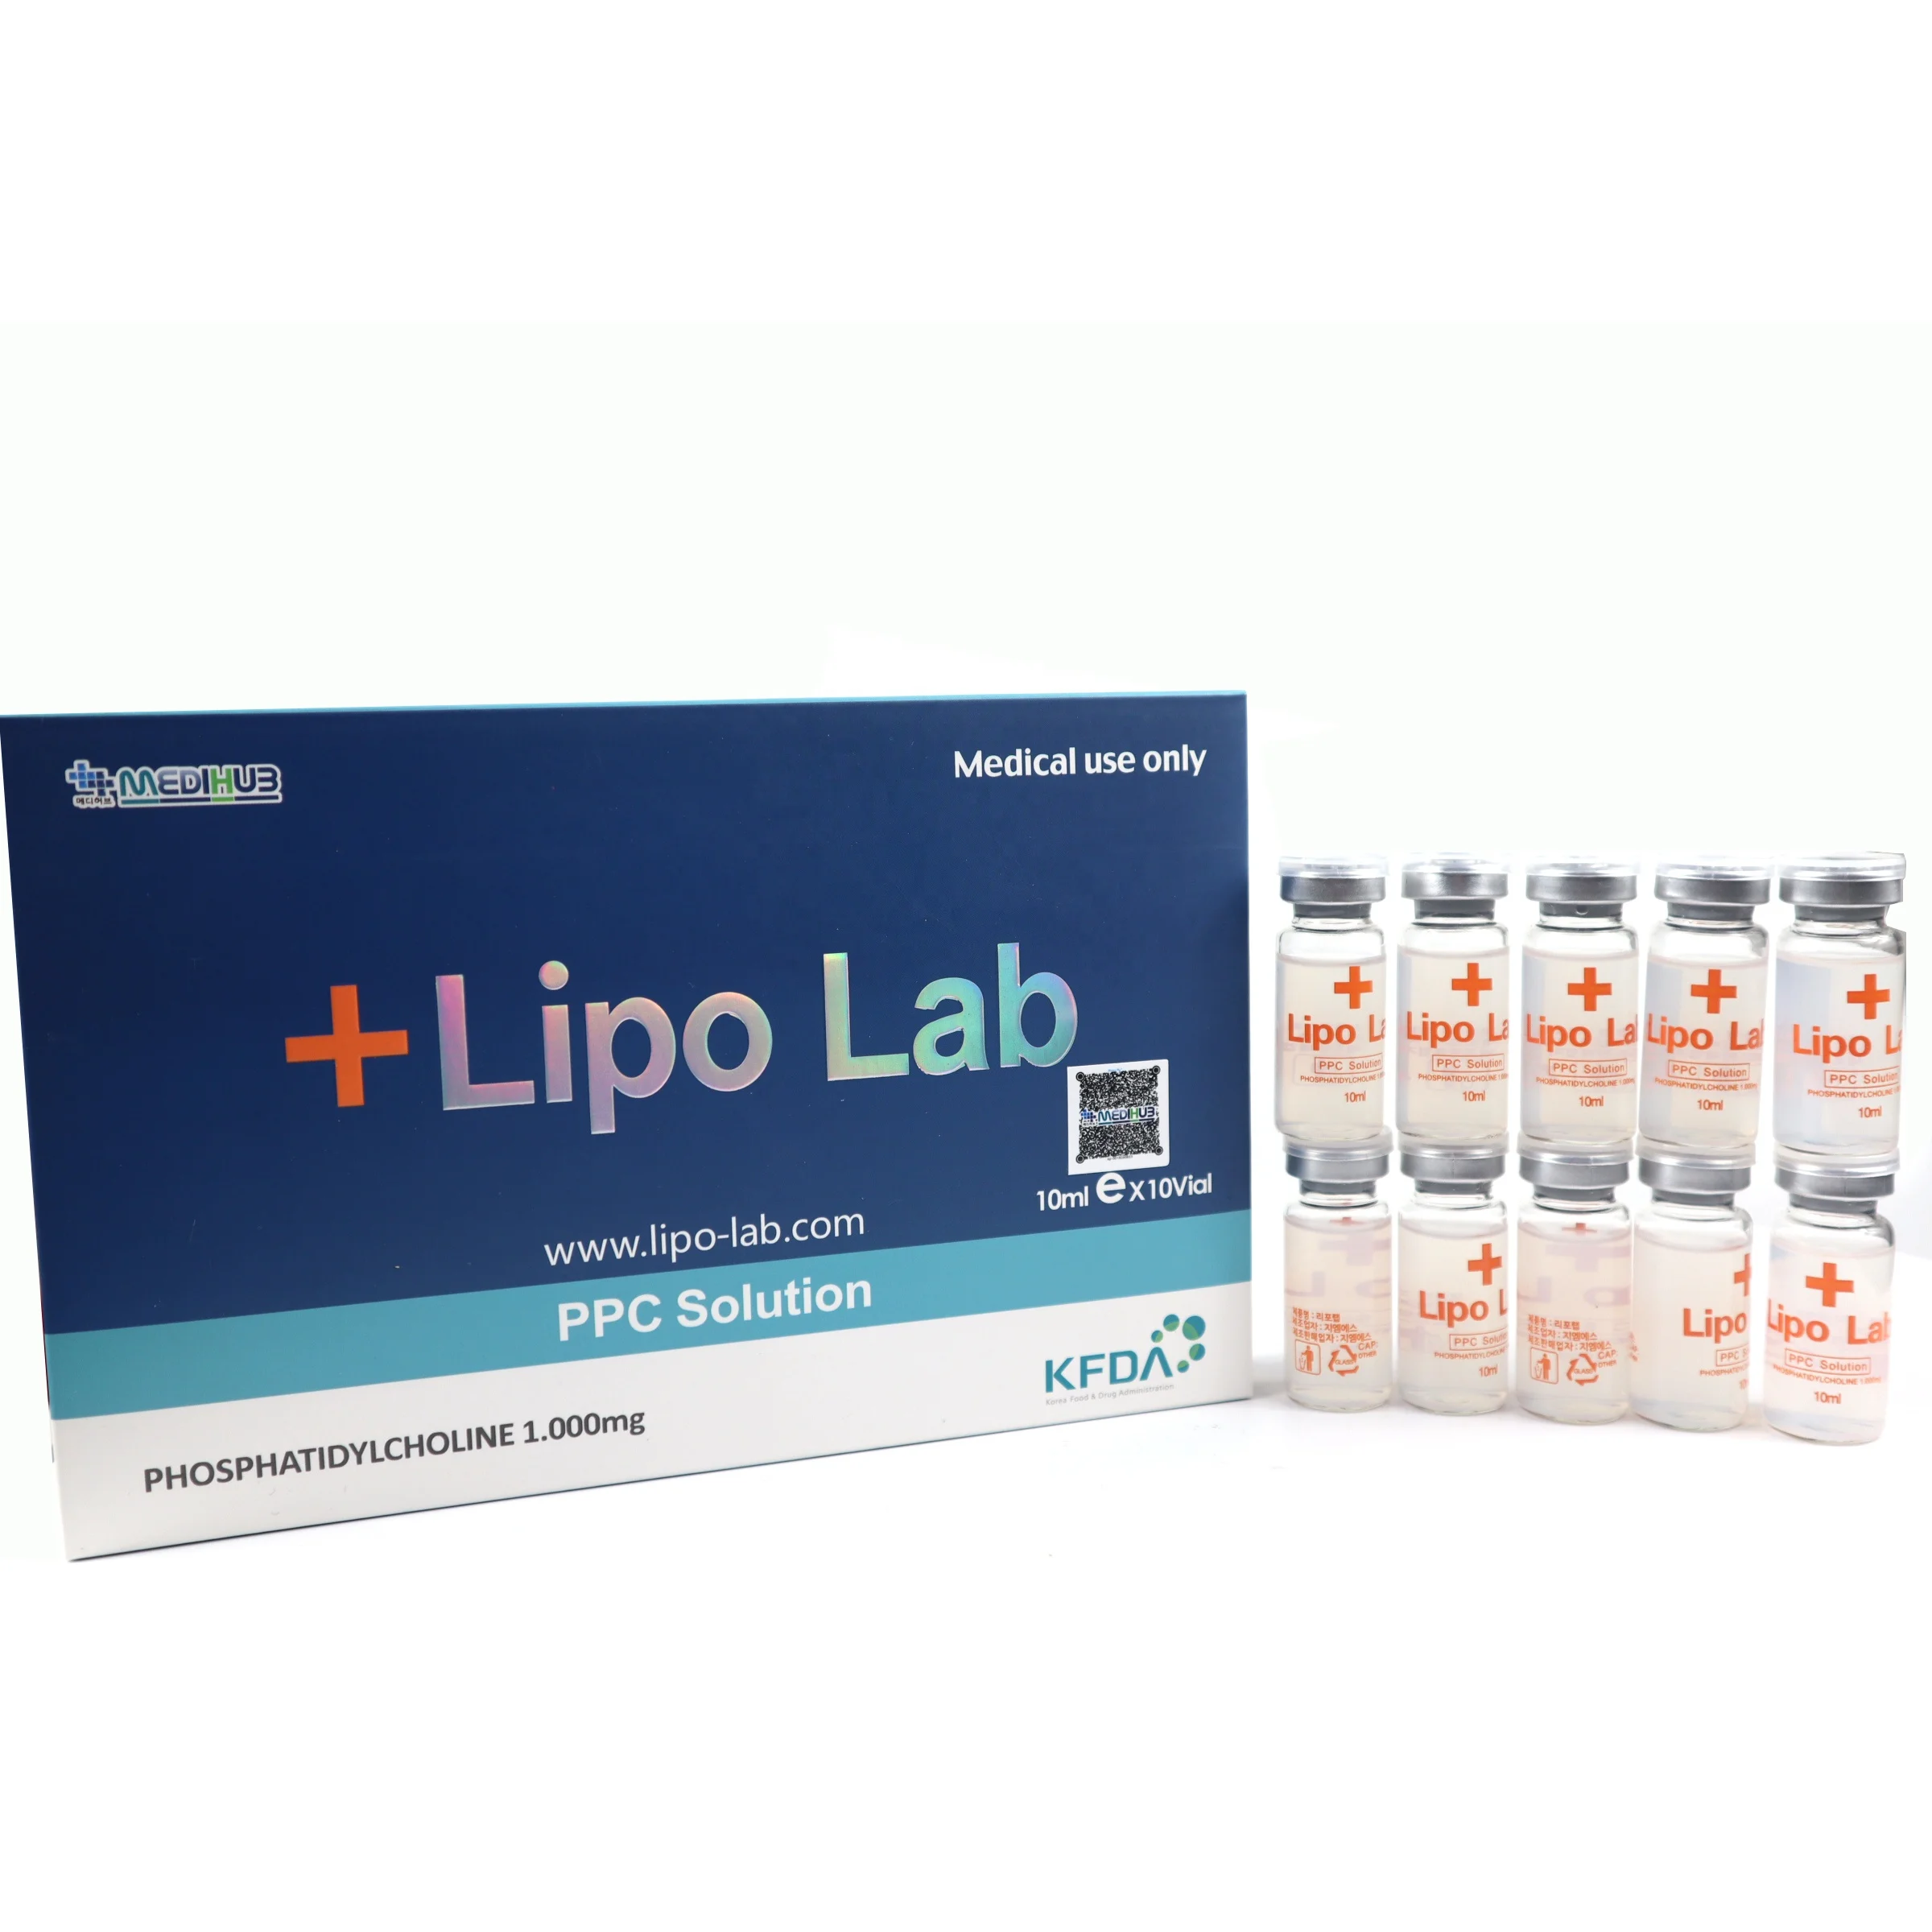 

Lipo lab ppc slimming solution fat dissolving lipo lab injection V line lipolysis injection lipo lab